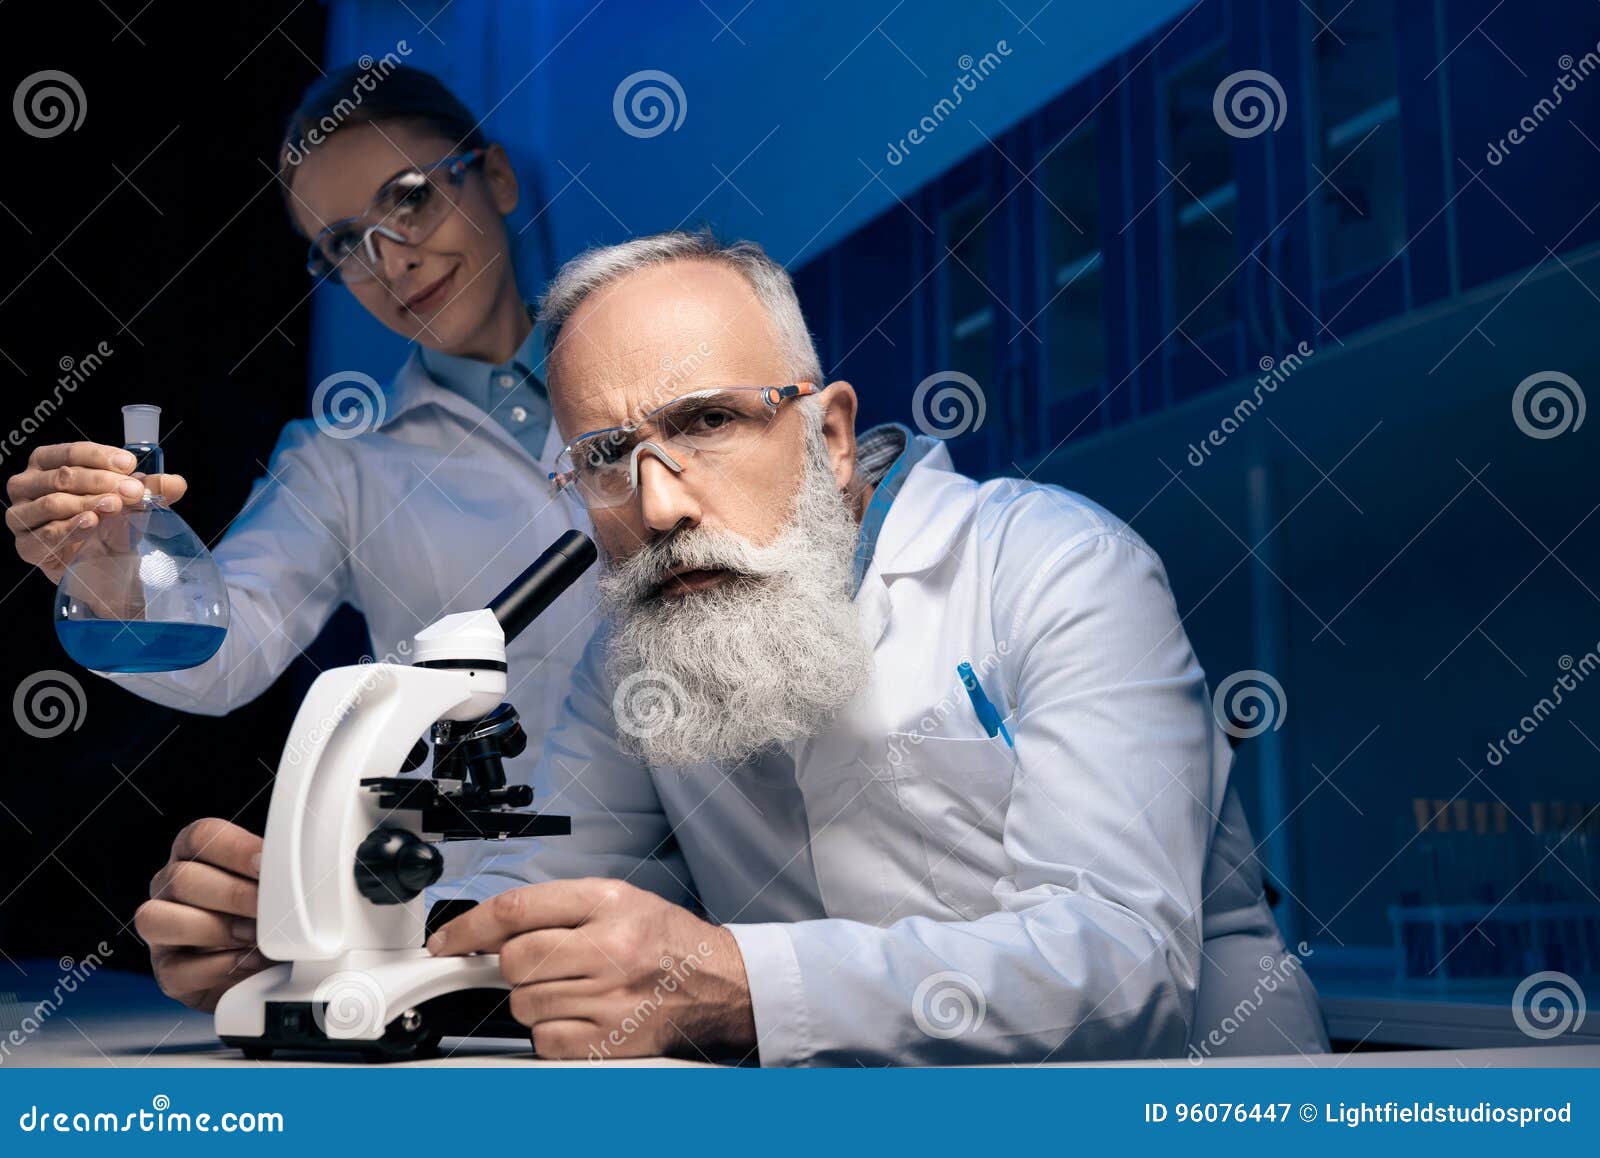 Люди которые становятся учеными. Ученый британец. Фотографии ученых нашего времени. Как стать ученым. Depositphotos_154663666-stock-photo-Scientist-using-Microscope-in-Lab.